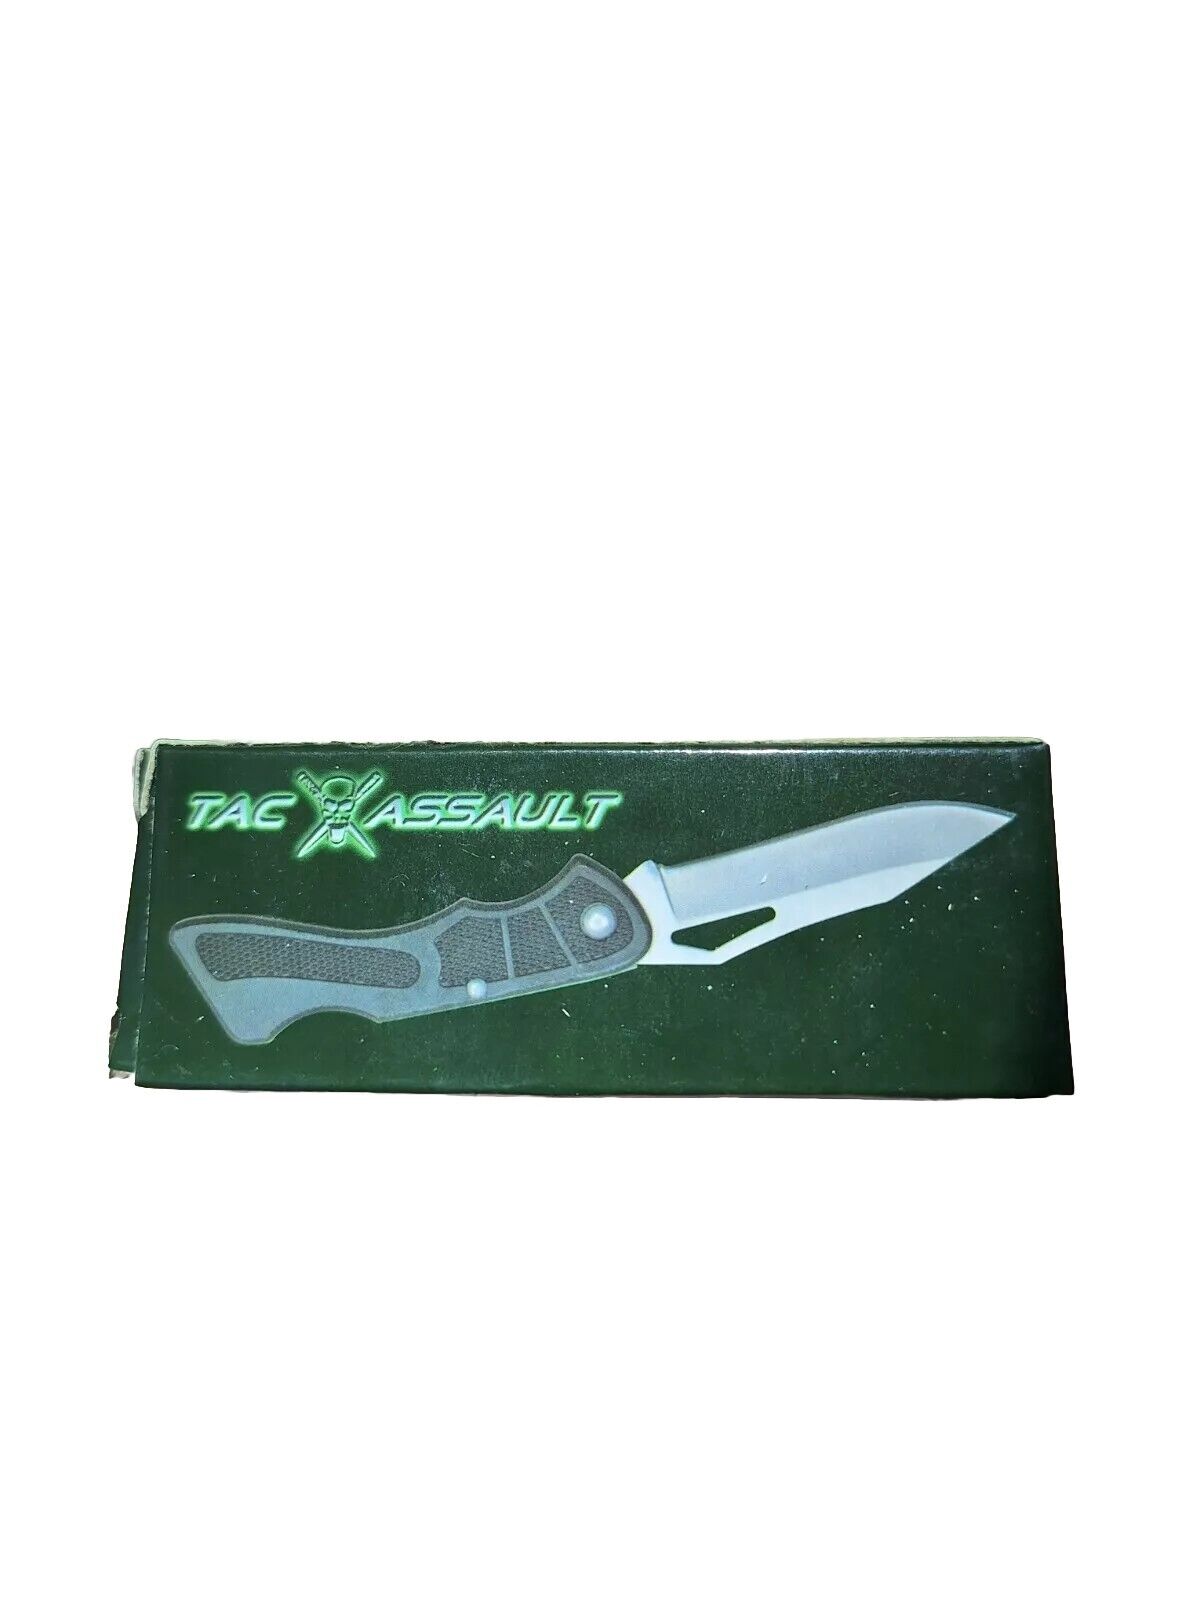 TAC Assault Pocket Knife